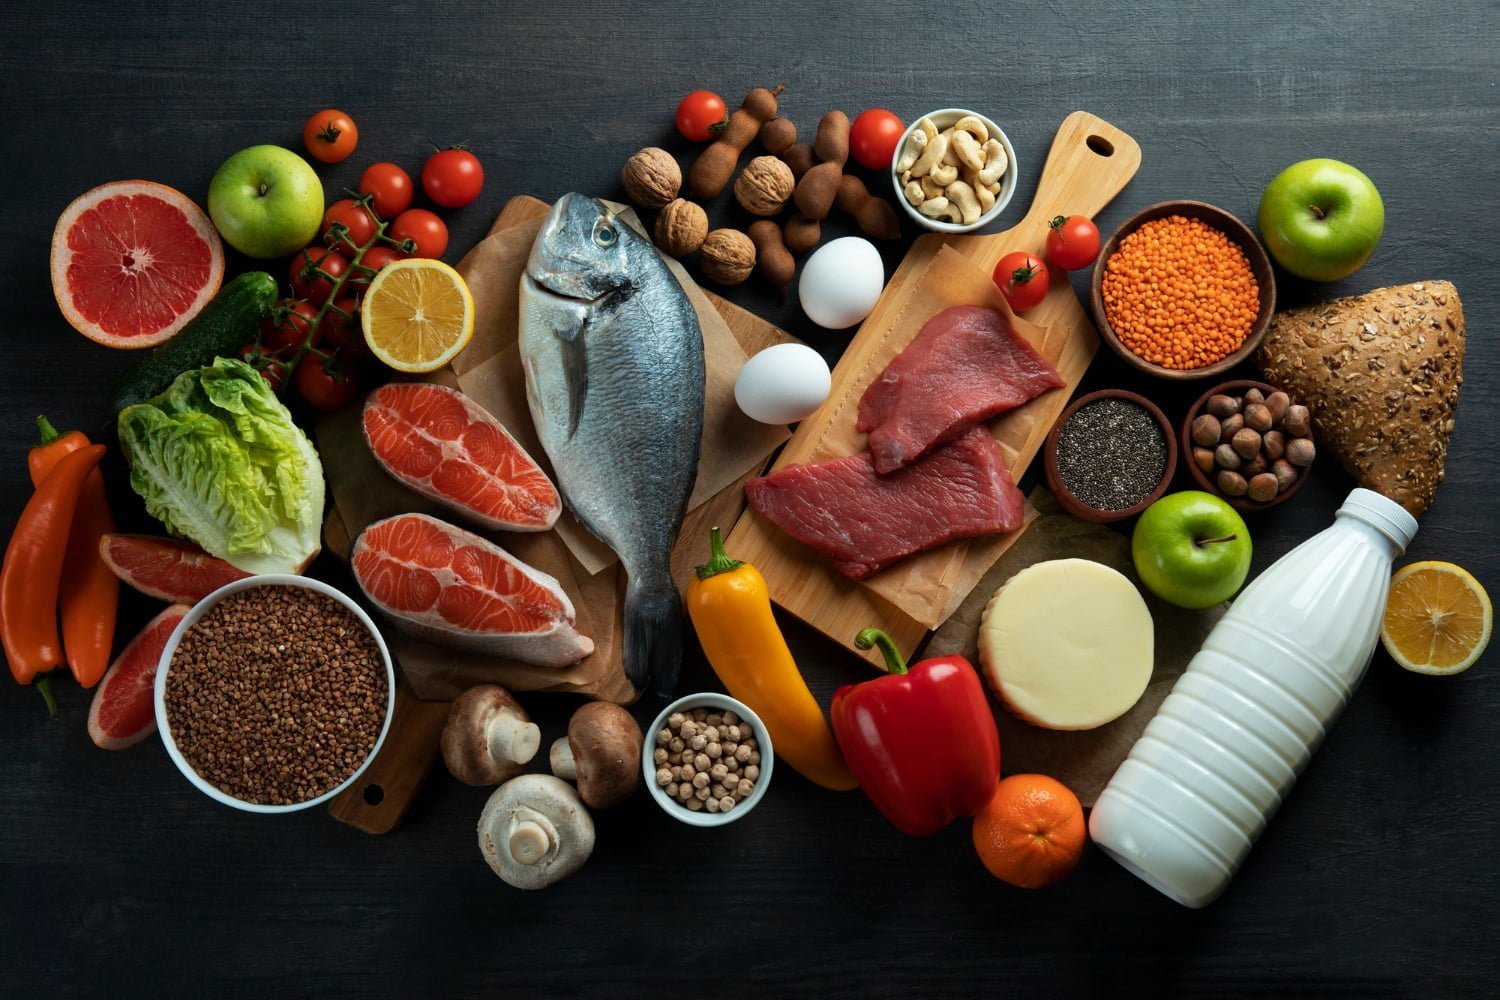 fuentes de proteína 9 alimentos que estimulan el cerebro / vista / vitamina / rostro / bajar de peso / vitamina b12 / dolor de rodillas